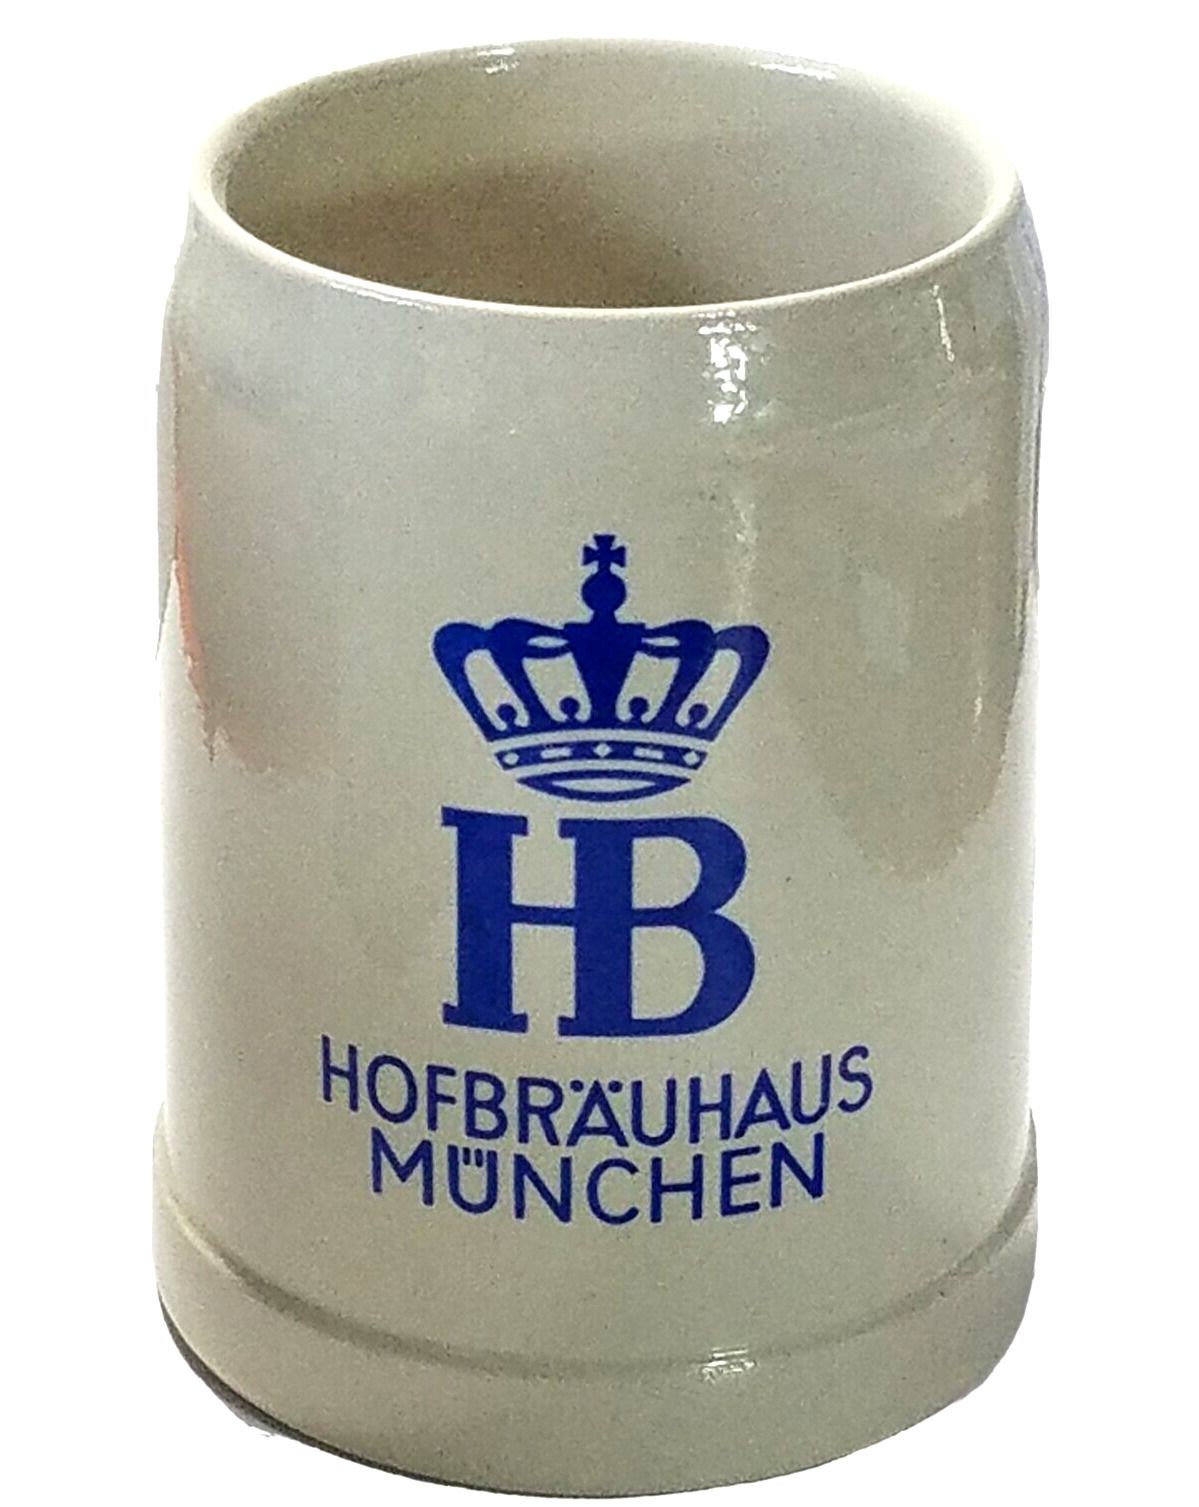 HB Crown Logo Hofbrauhaus Munchen Gerz  Germany .5 Liter 5\